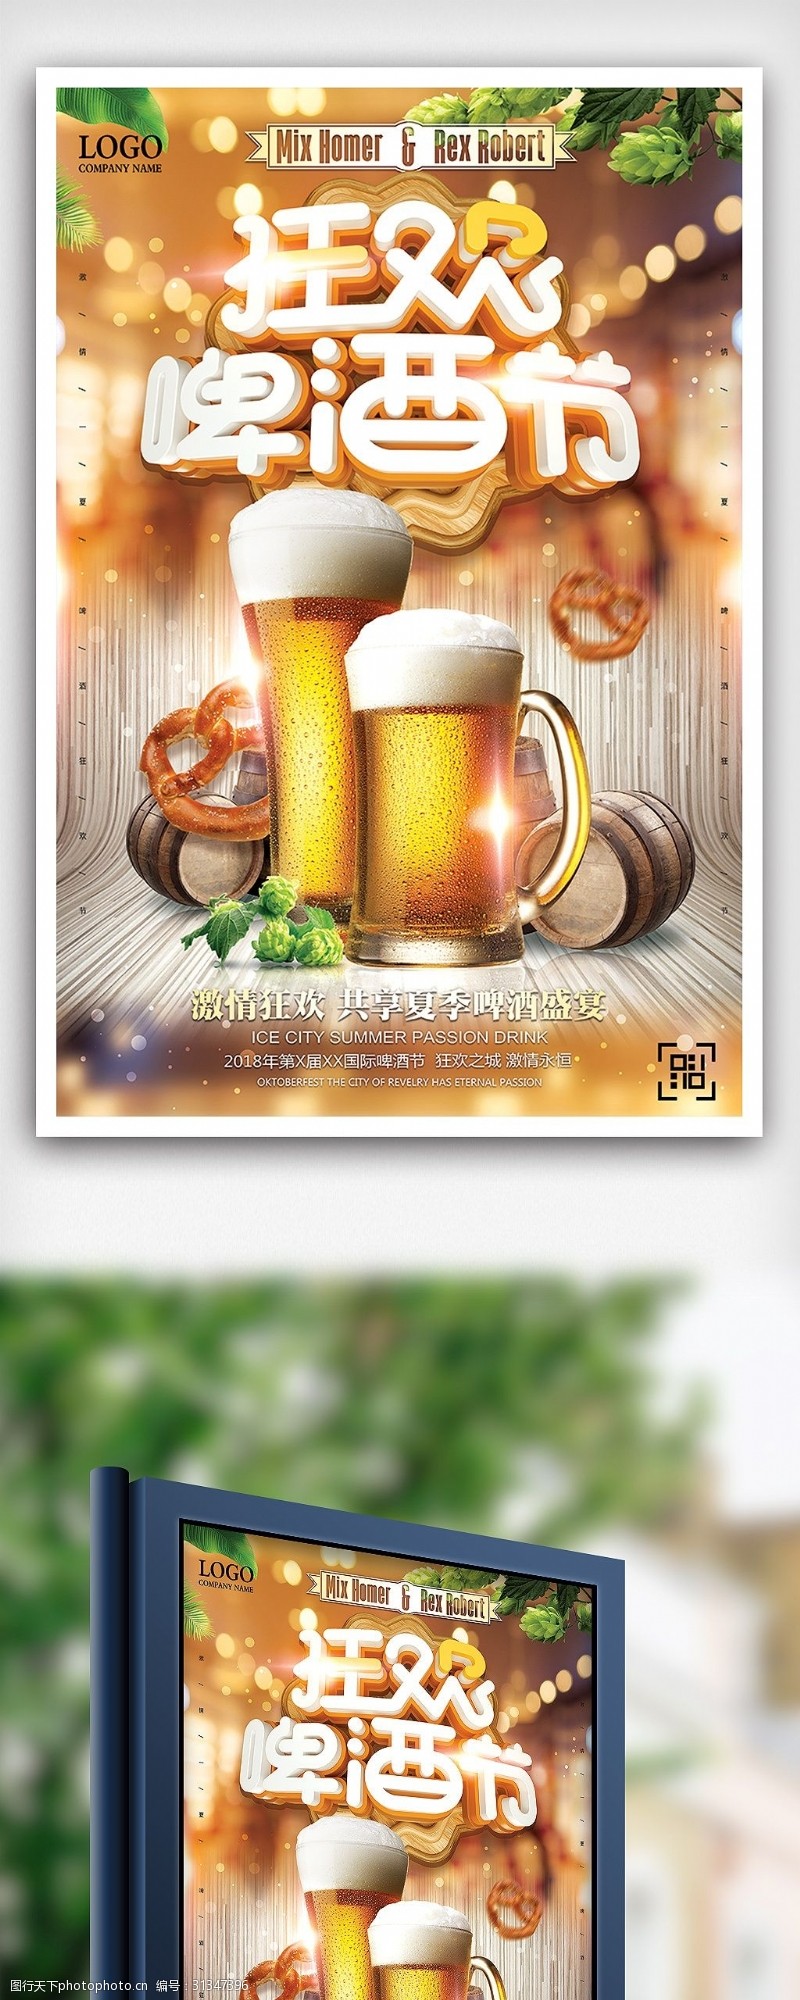 啤酒免费下载夏季狂欢啤酒节无限畅饮海报设计